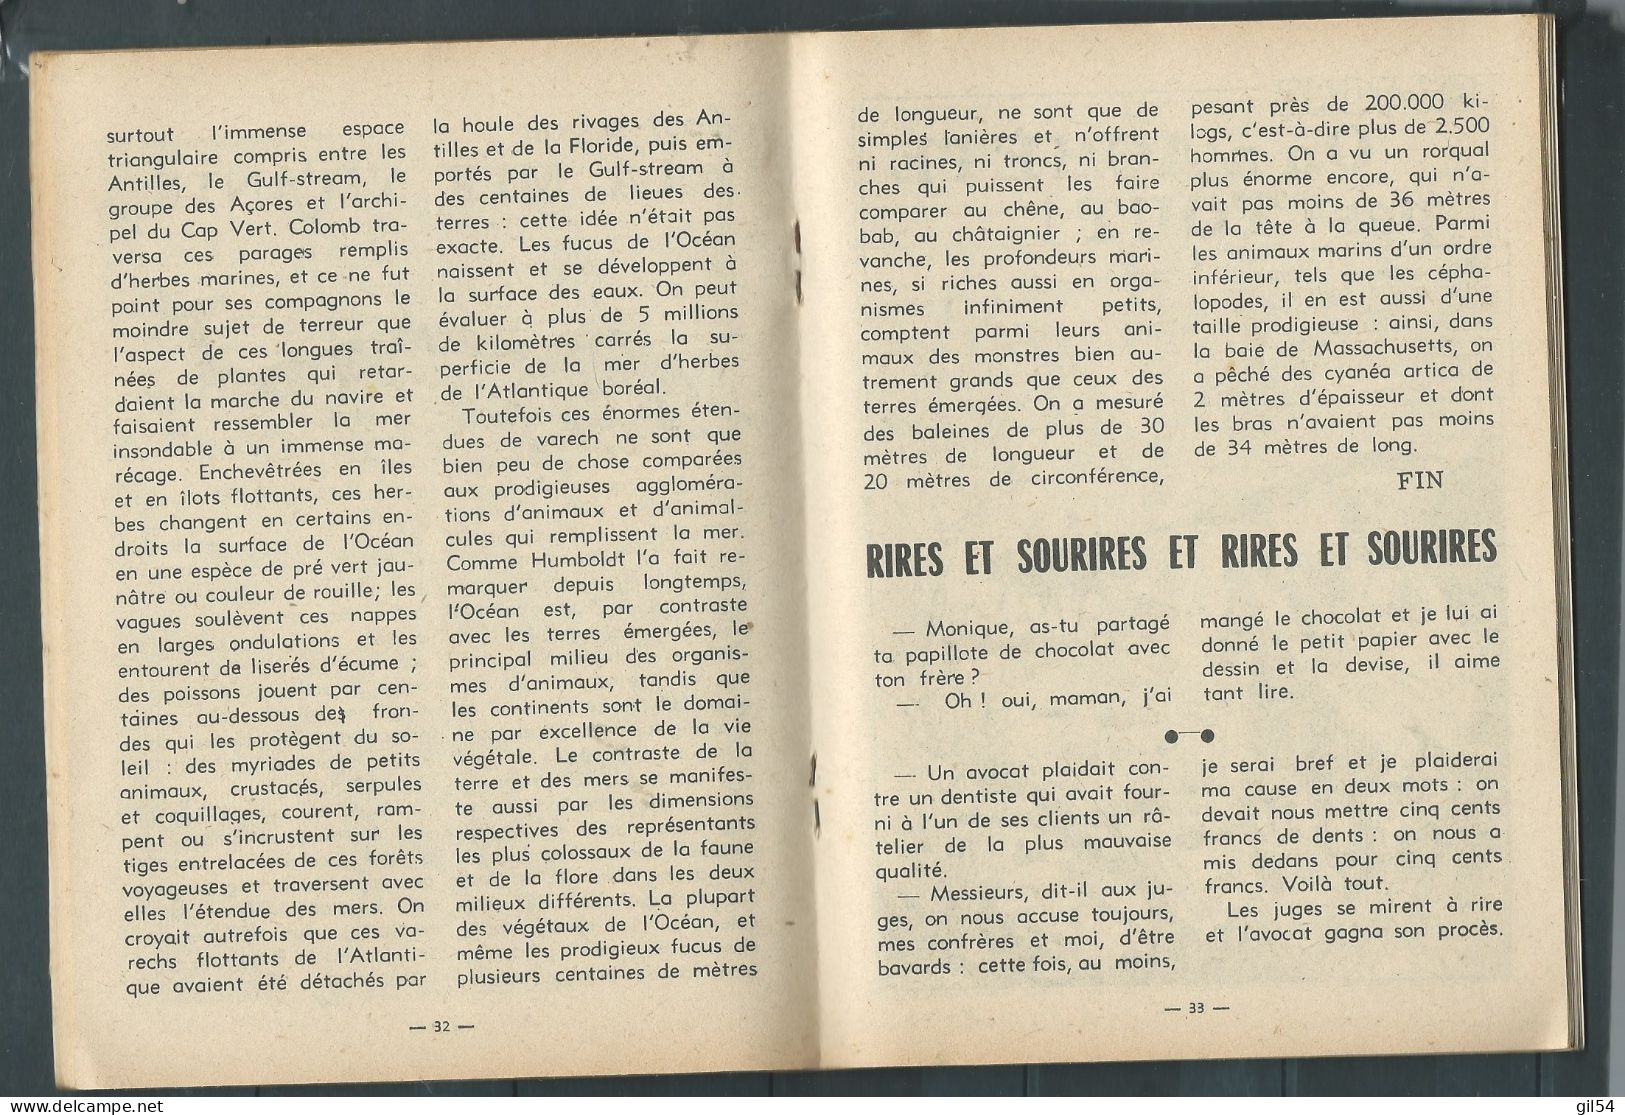 Bd " Tex-Tone  " Bimensuel N° 190 "  2 Beaux Chevaux , 3 Beaux Coquins  "      , DL  1 Er  Tri.  1965  - BE- RAP 0703 - Petit Format